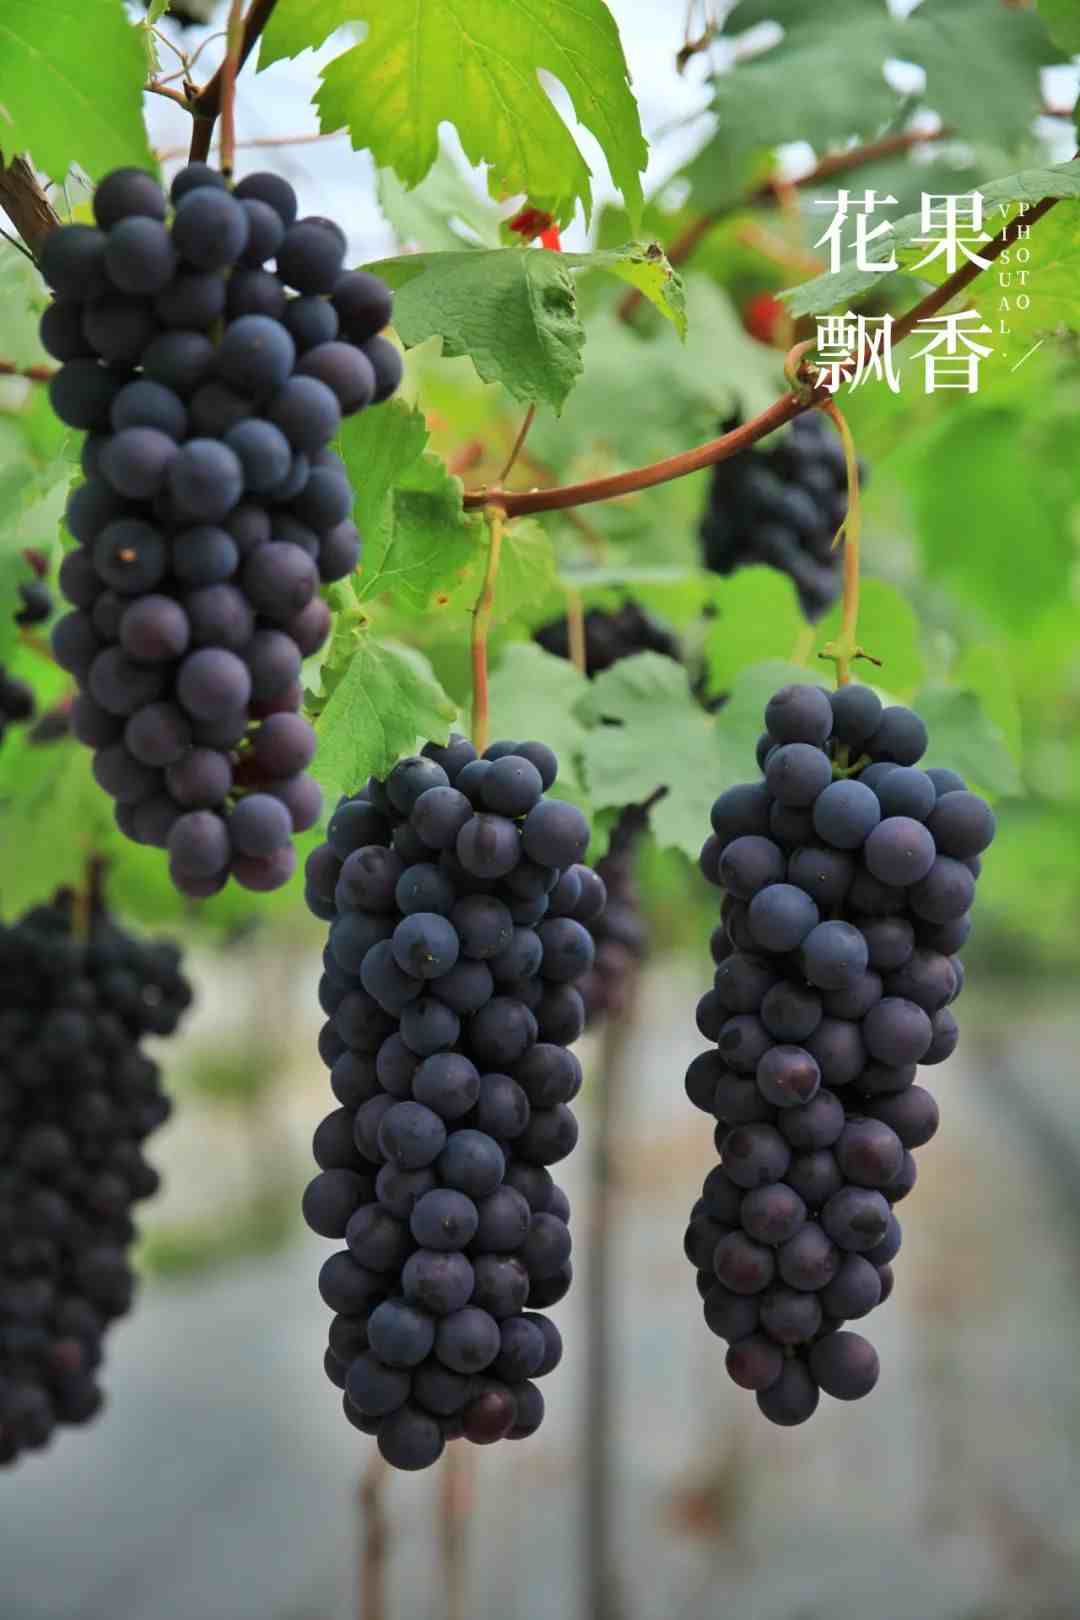 红的，绿的，黑的，介绍3种极早熟葡萄新品种